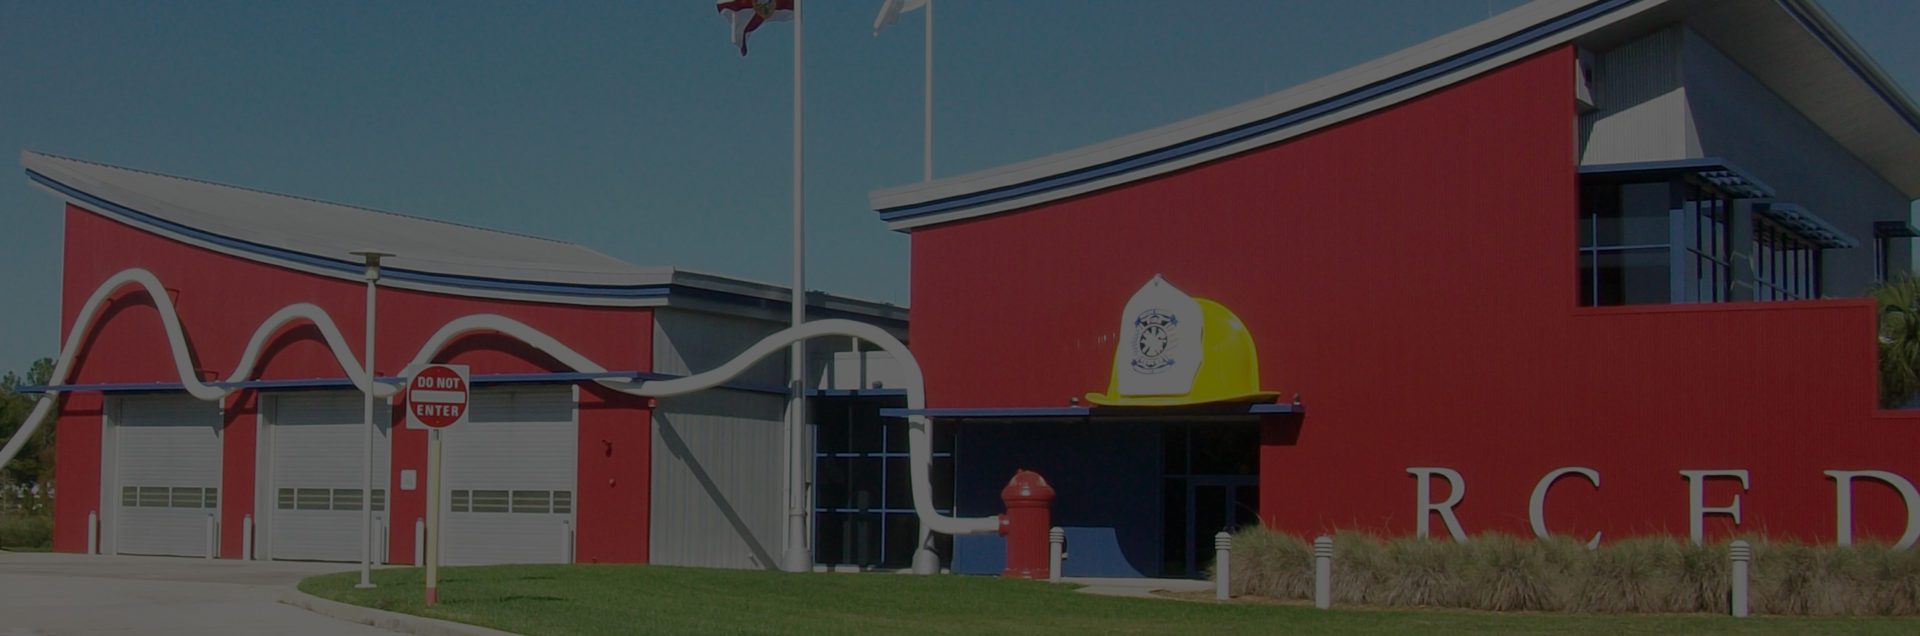 RCID Fire Station Banner Background Image